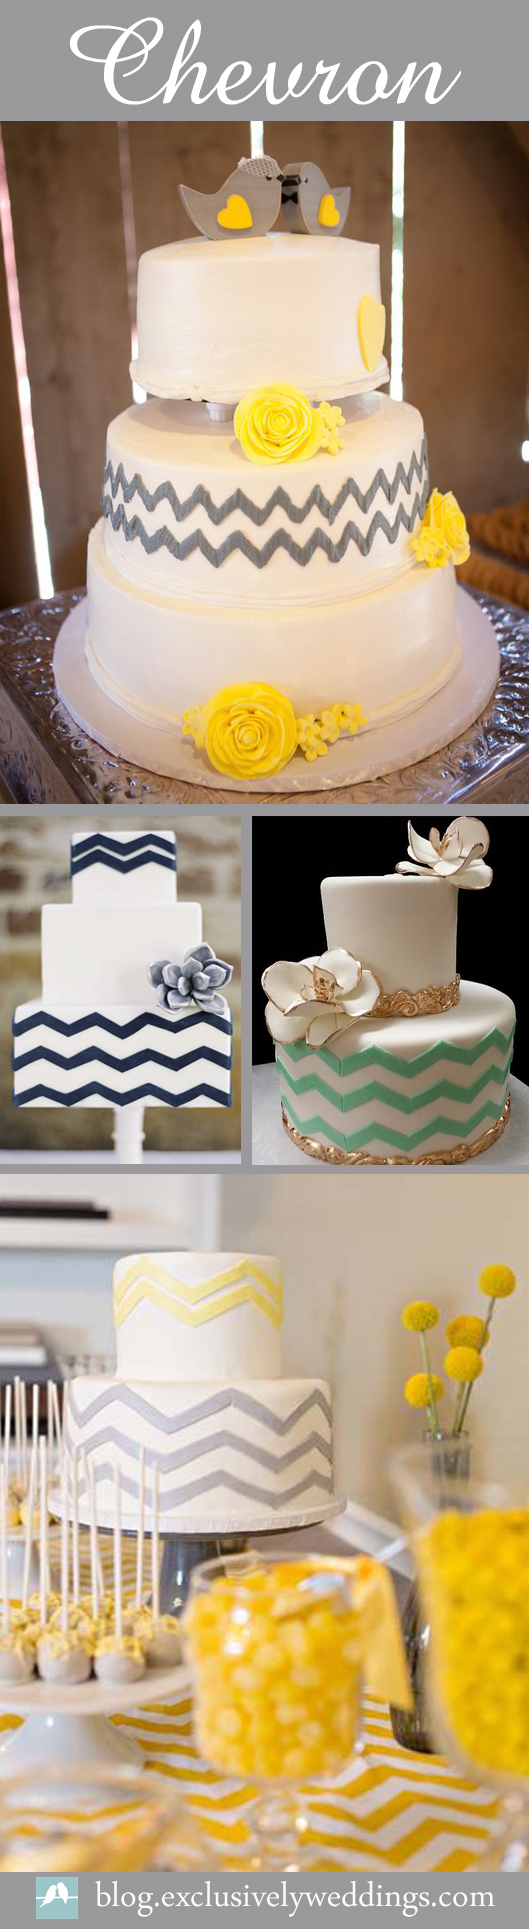 Chevron-Wedding-Cake-Ideas